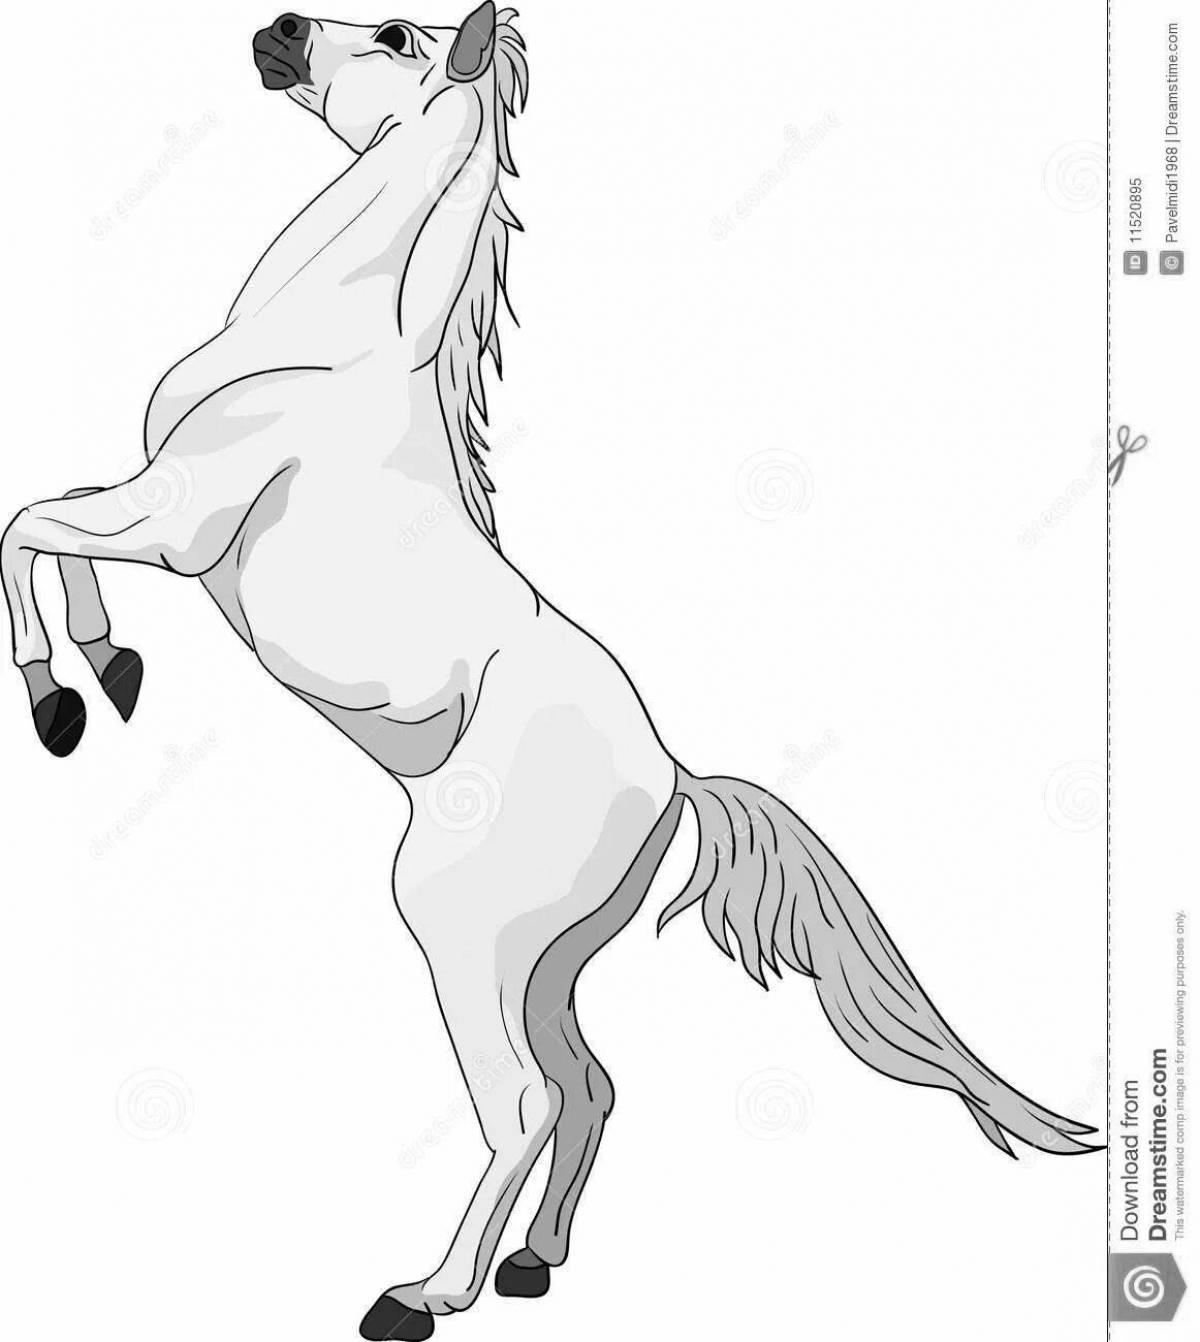 Раскраска грандиозная вздыбленная лошадь